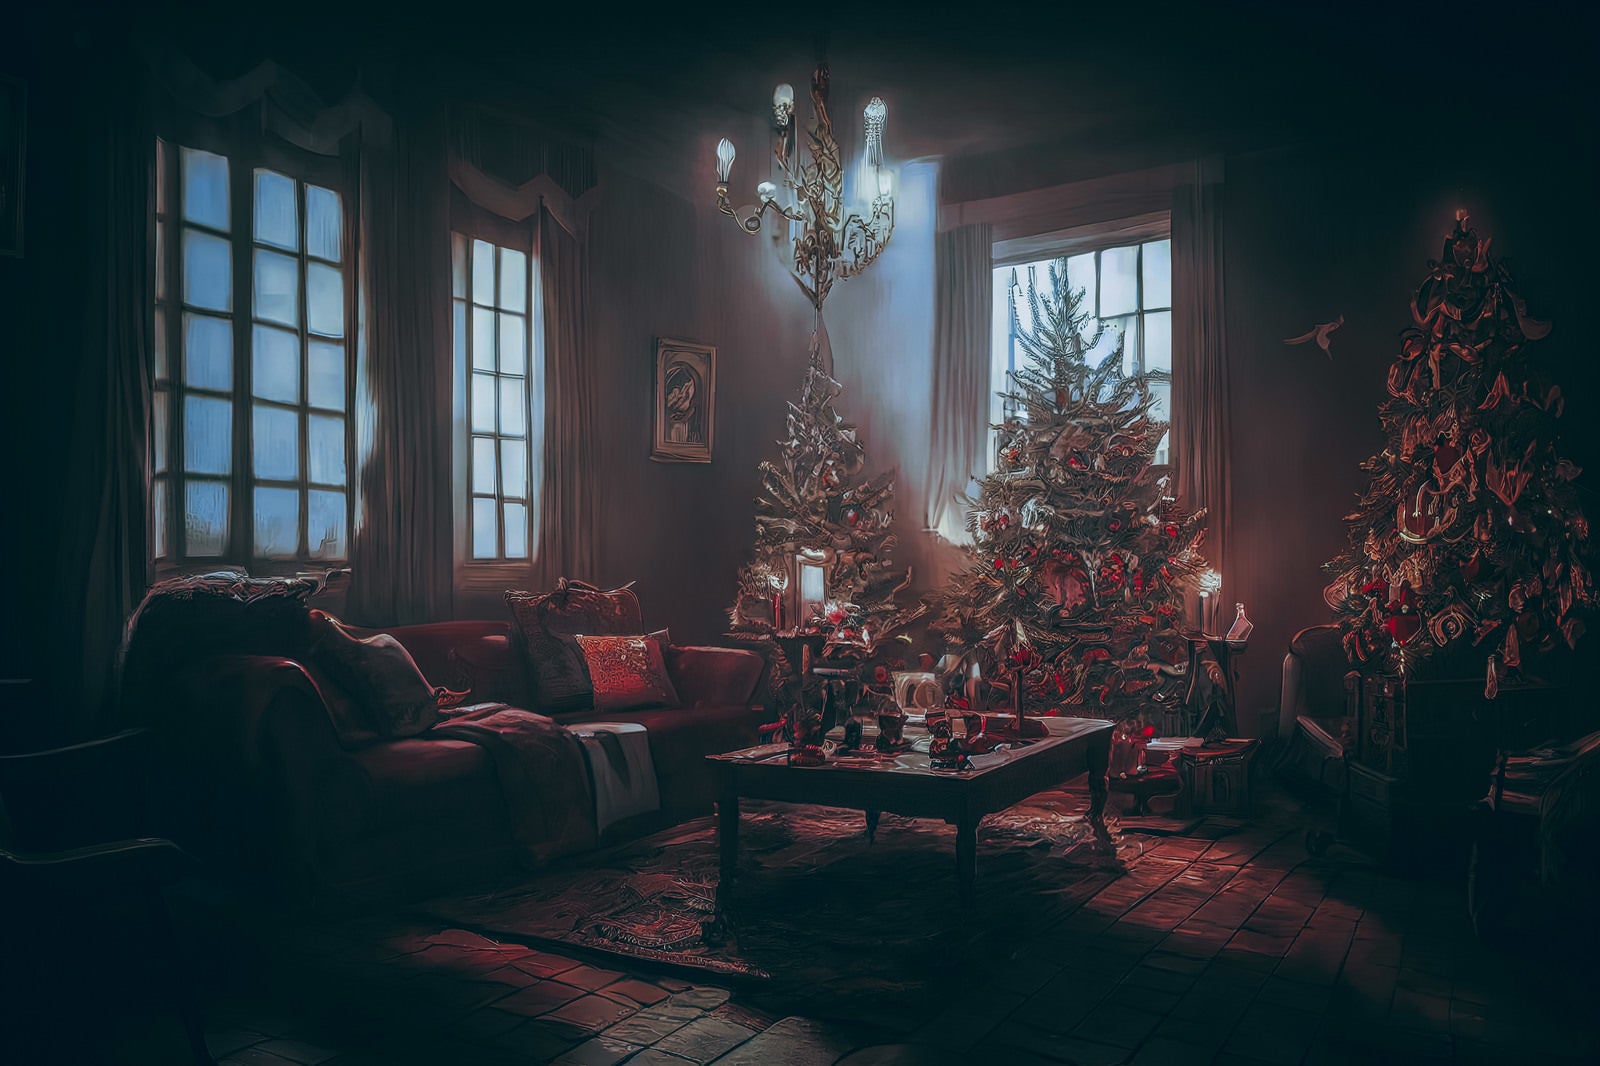 「消し忘れたリビングの照明とクリスマスツリー」の写真